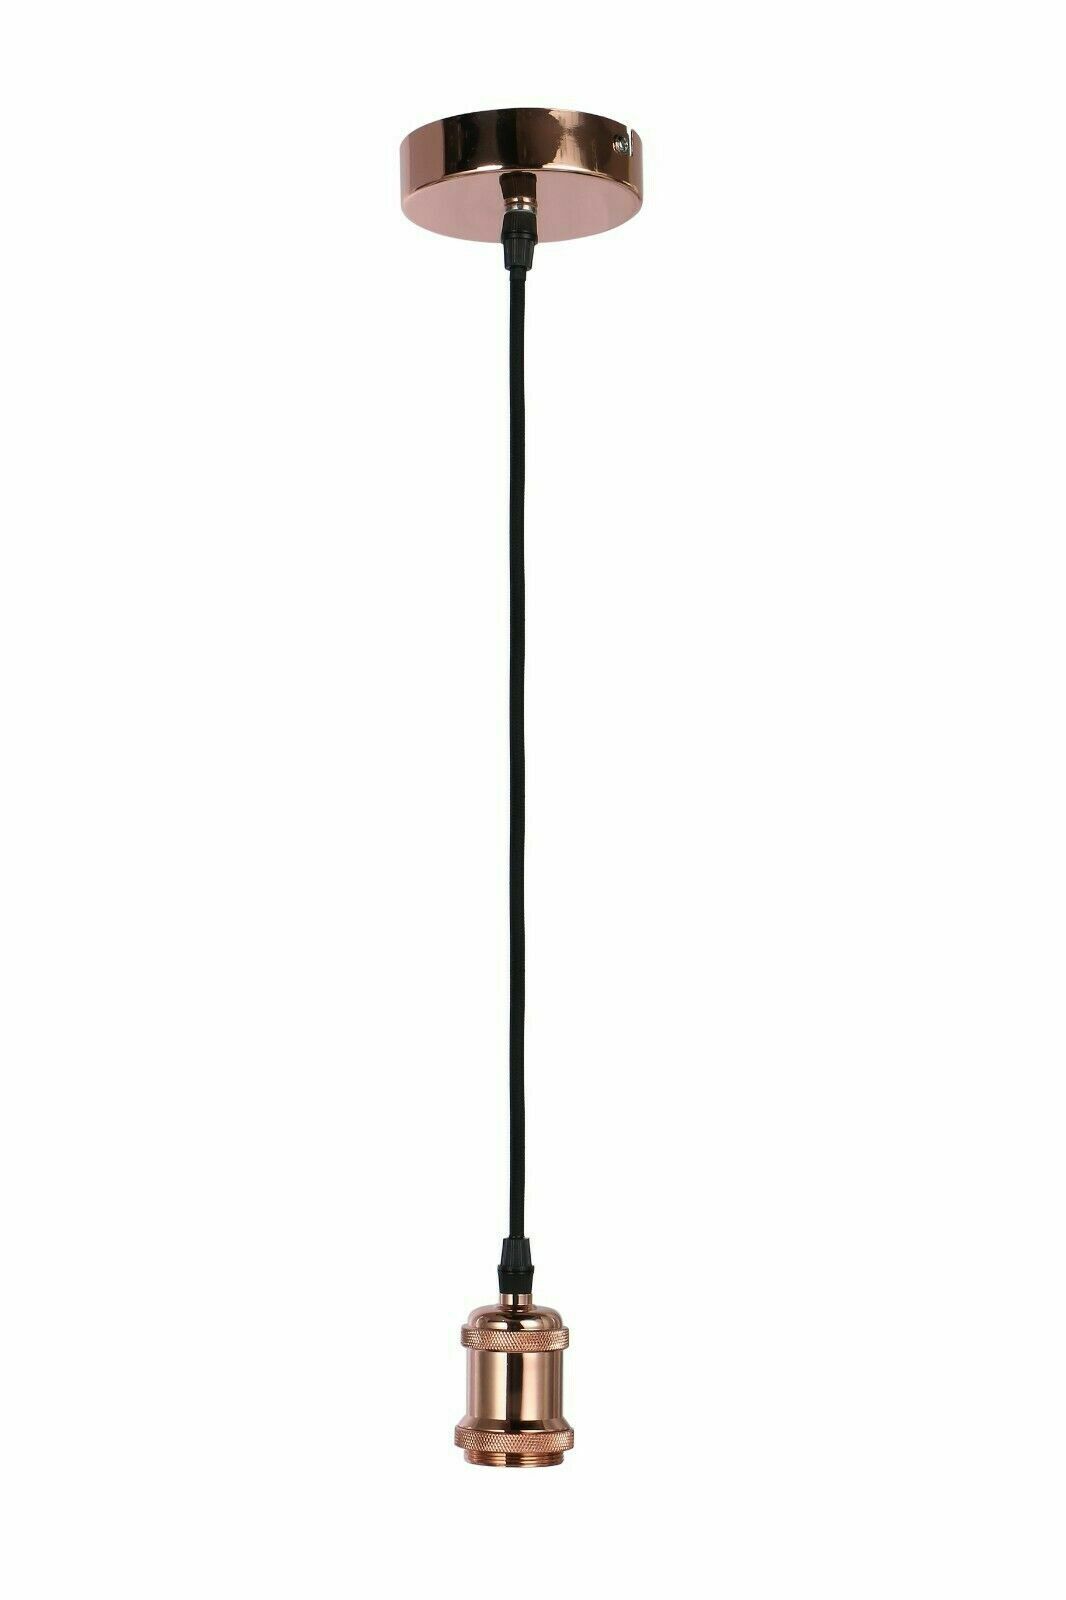 Vintage Pendant Light Fitting Modern Retro Industrial Style E27 Lamp Holder UKEW®